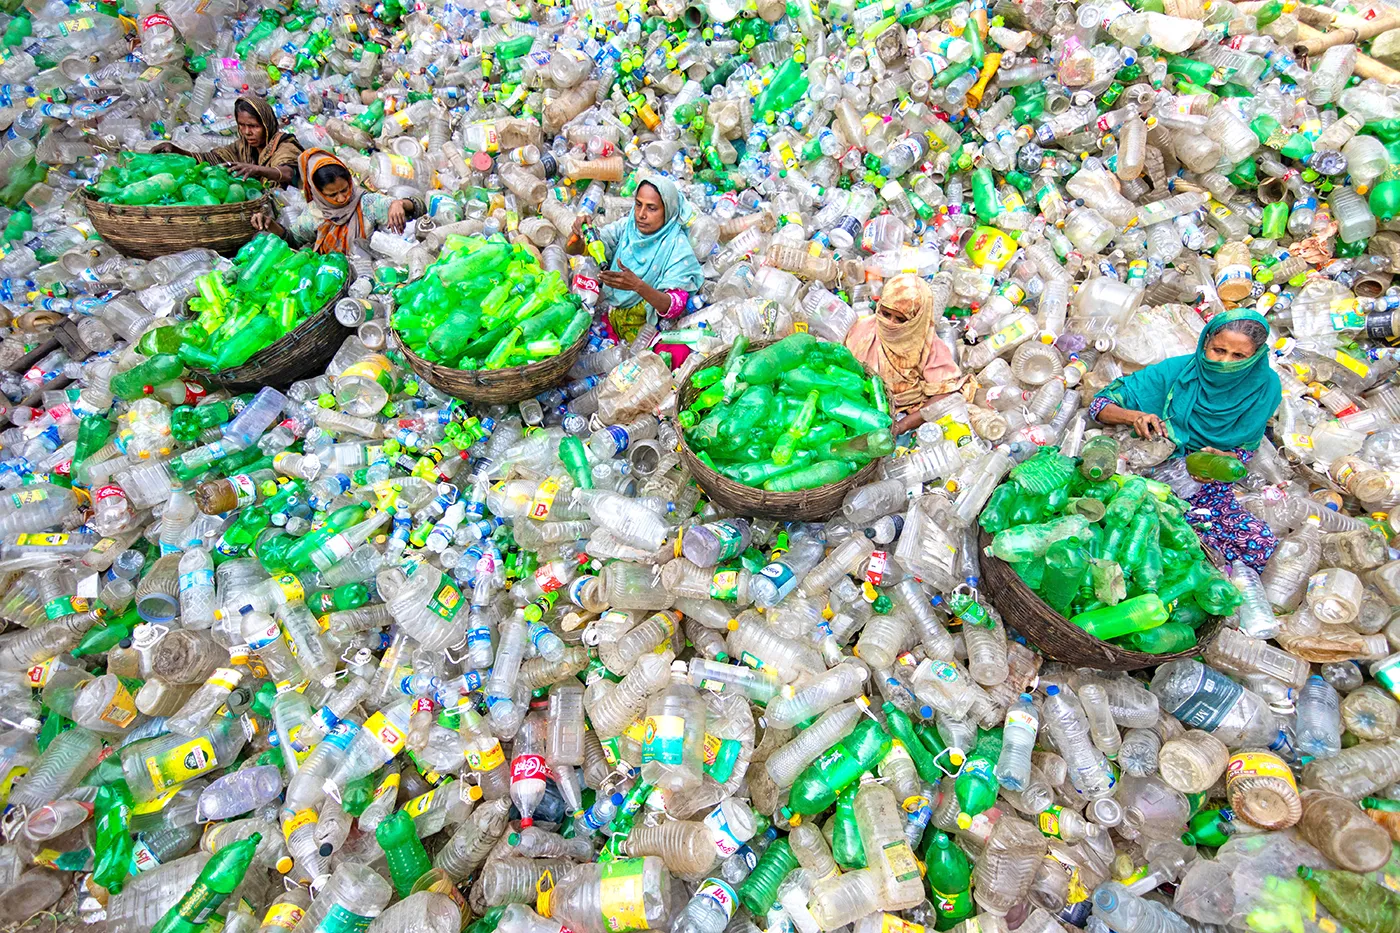 Сортировка пластиковых бутылок в Бангладеш. Фото дня